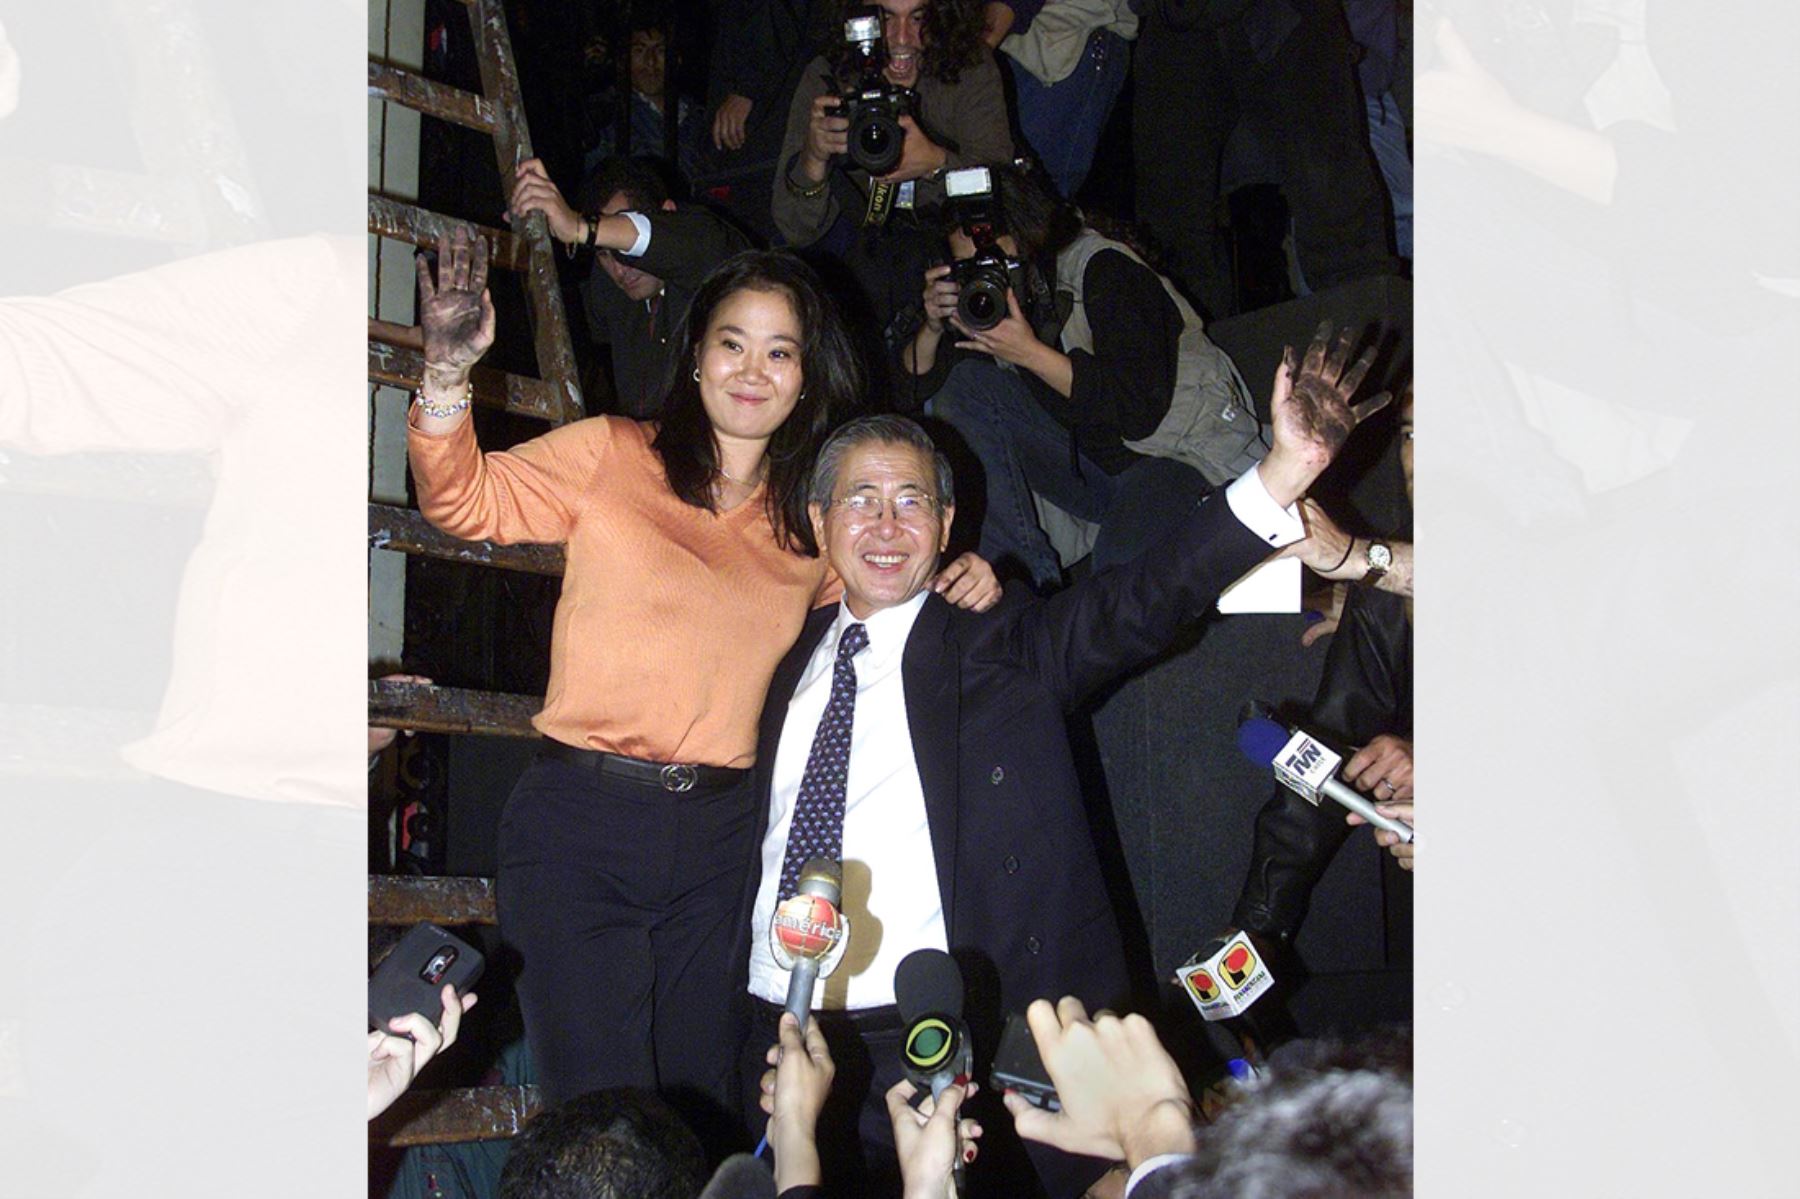 El presidente Alberto Fujimori saluda a la prensa acompañado por su hija y  primera dama de la Nación  Keiko Fujimori, luego de subir a una escalera para saludar a los simpatizantes que se manifestaban en el Palacio de Gobierno en Lima el 19 de septiembre de 2000. Fujimori anunció que permanecerá en el poder hasta el 28 de julio de 2001, cuando entregará la presidencia al candidato elegido en las elecciones que se celebrarán "tan pronto como sea posible".  Foto: AFP